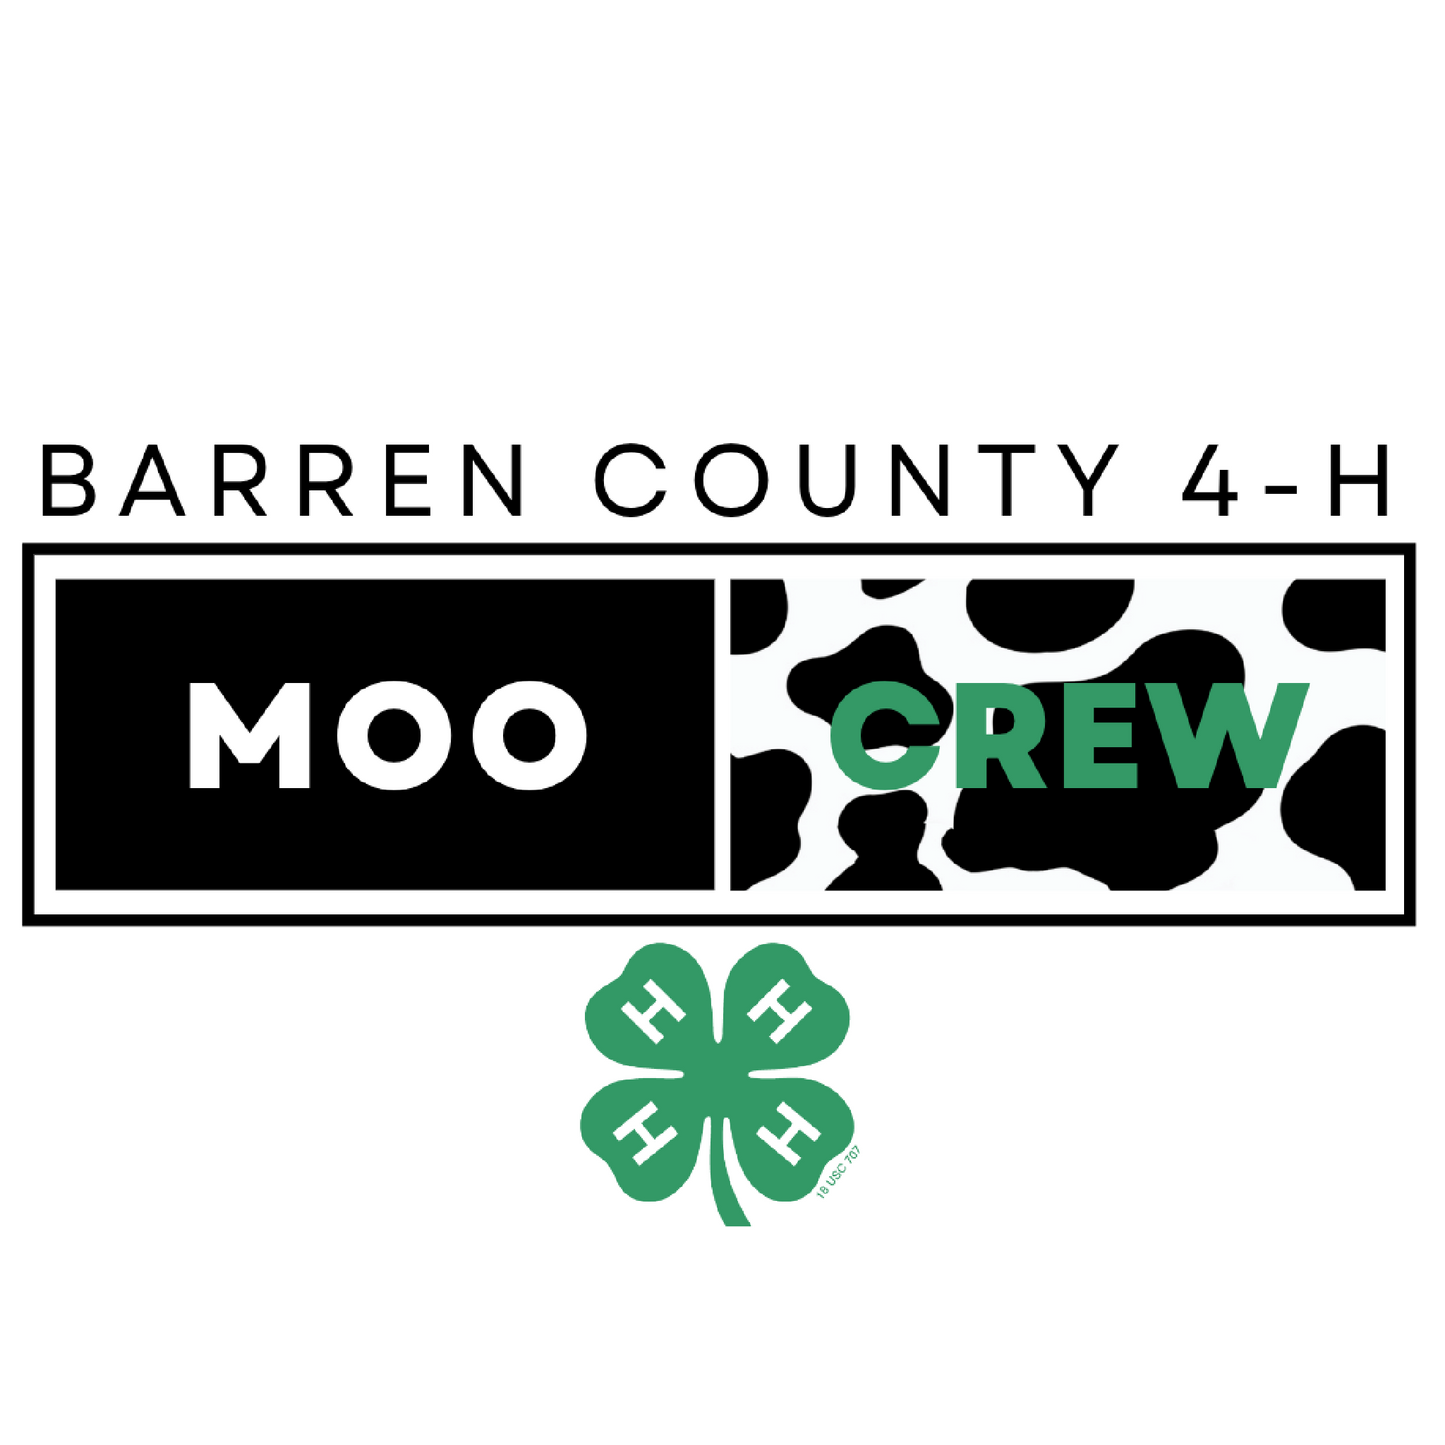 Barren County 4H Moo Crew Tee